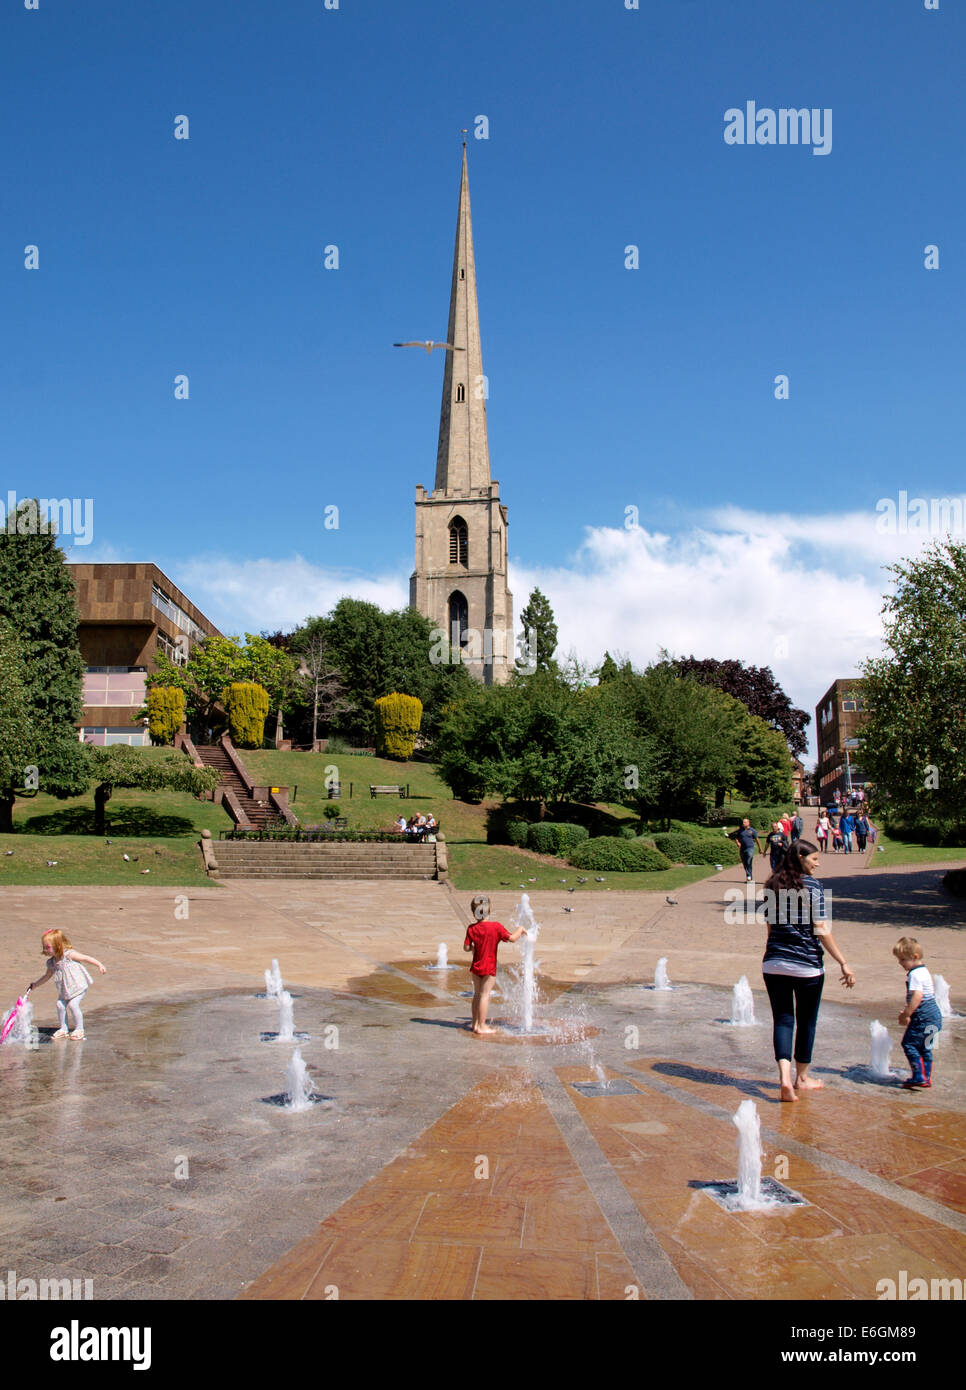 Enfants jouant dans la fontaine située près de l'aiguille (Glover's ou St Andrews Spire), Worcester, Royaume-Uni Banque D'Images